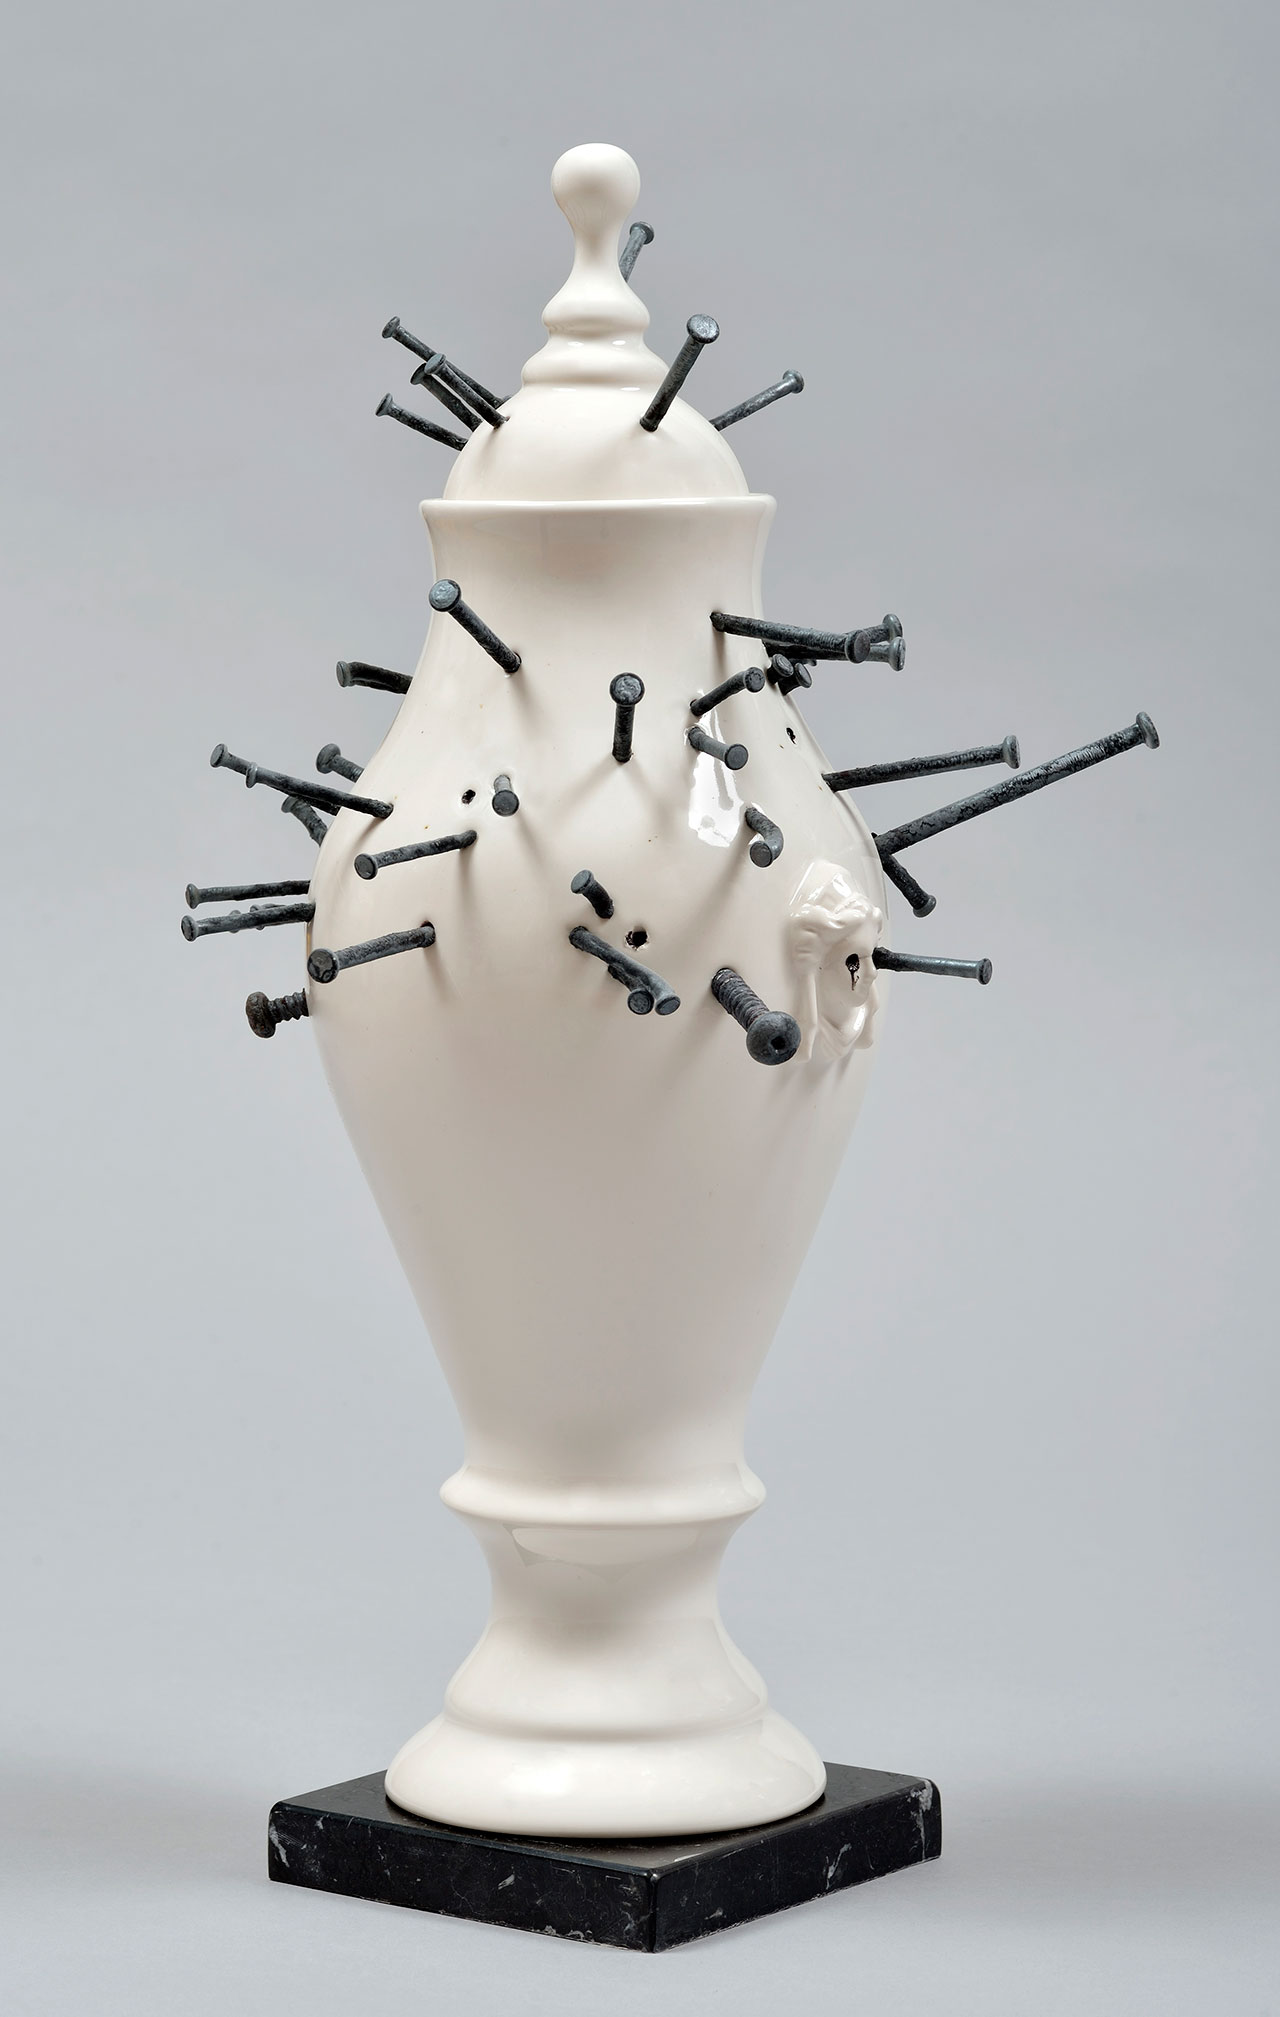 Craste Laurent, Vase Vaudou, 2014. Porcelain, glaze, nails, marble. 41.8 x 21.4 x 22.8 cm.